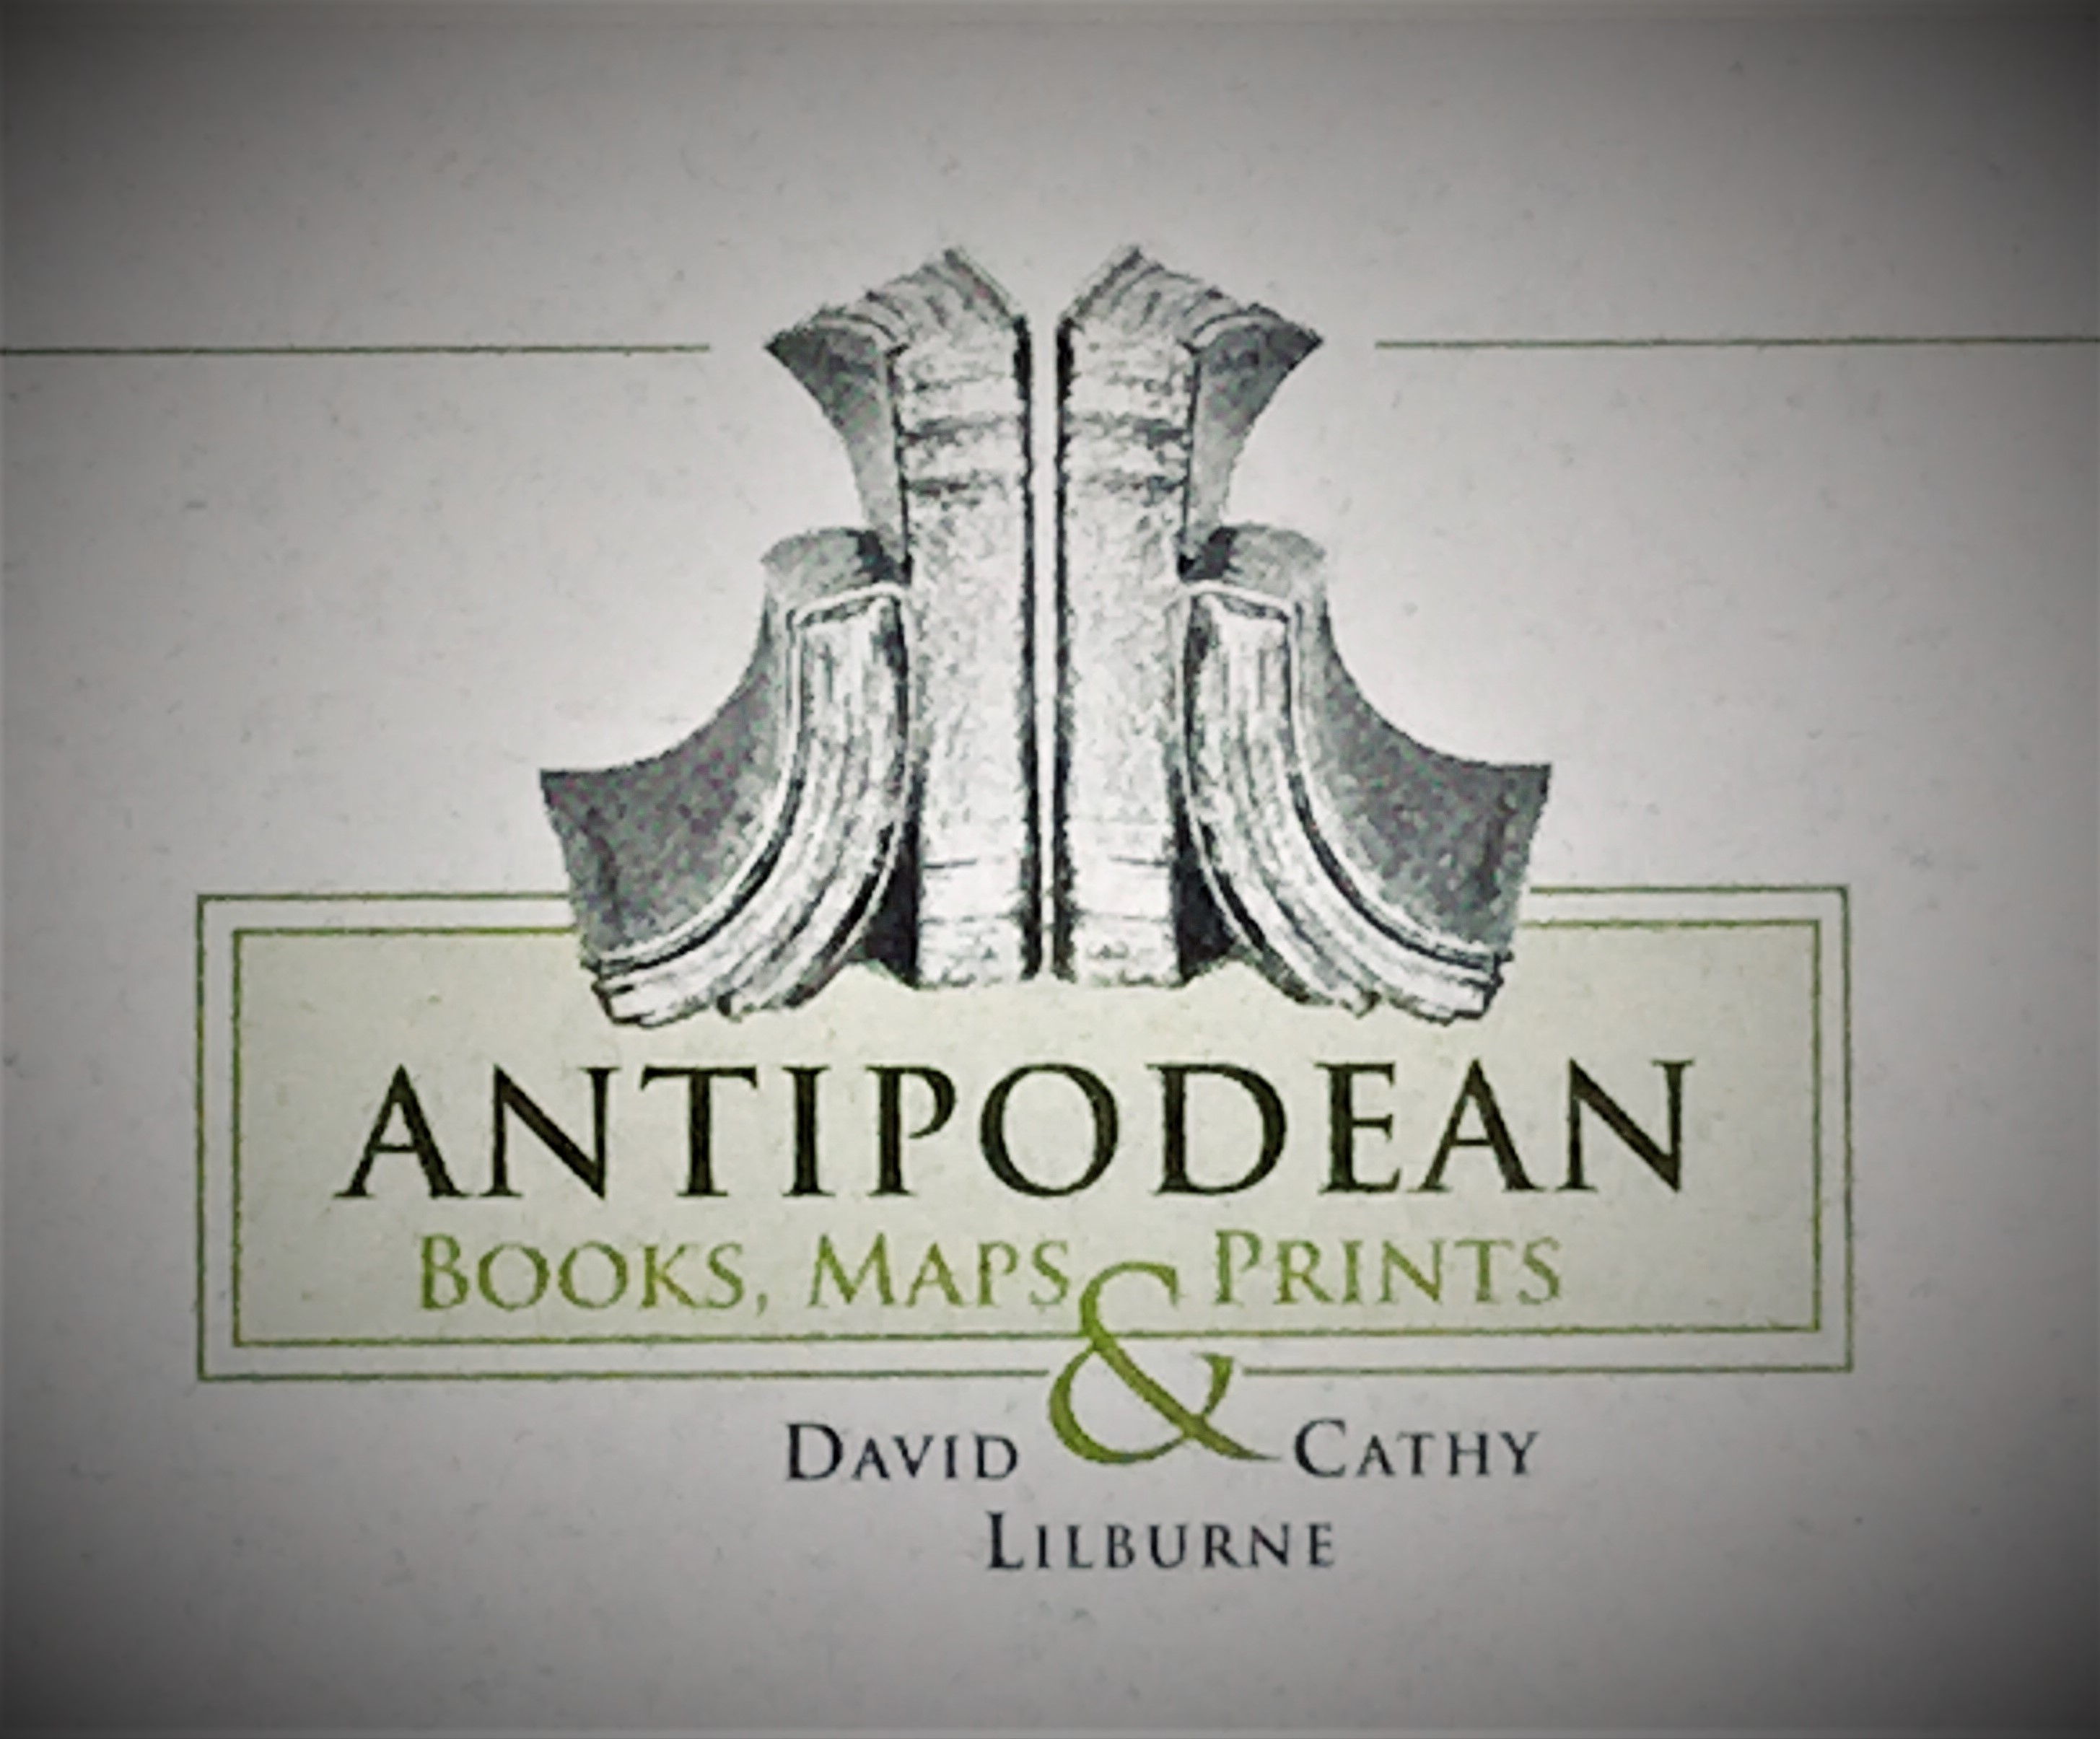 Antipodean Books, Maps & Prints